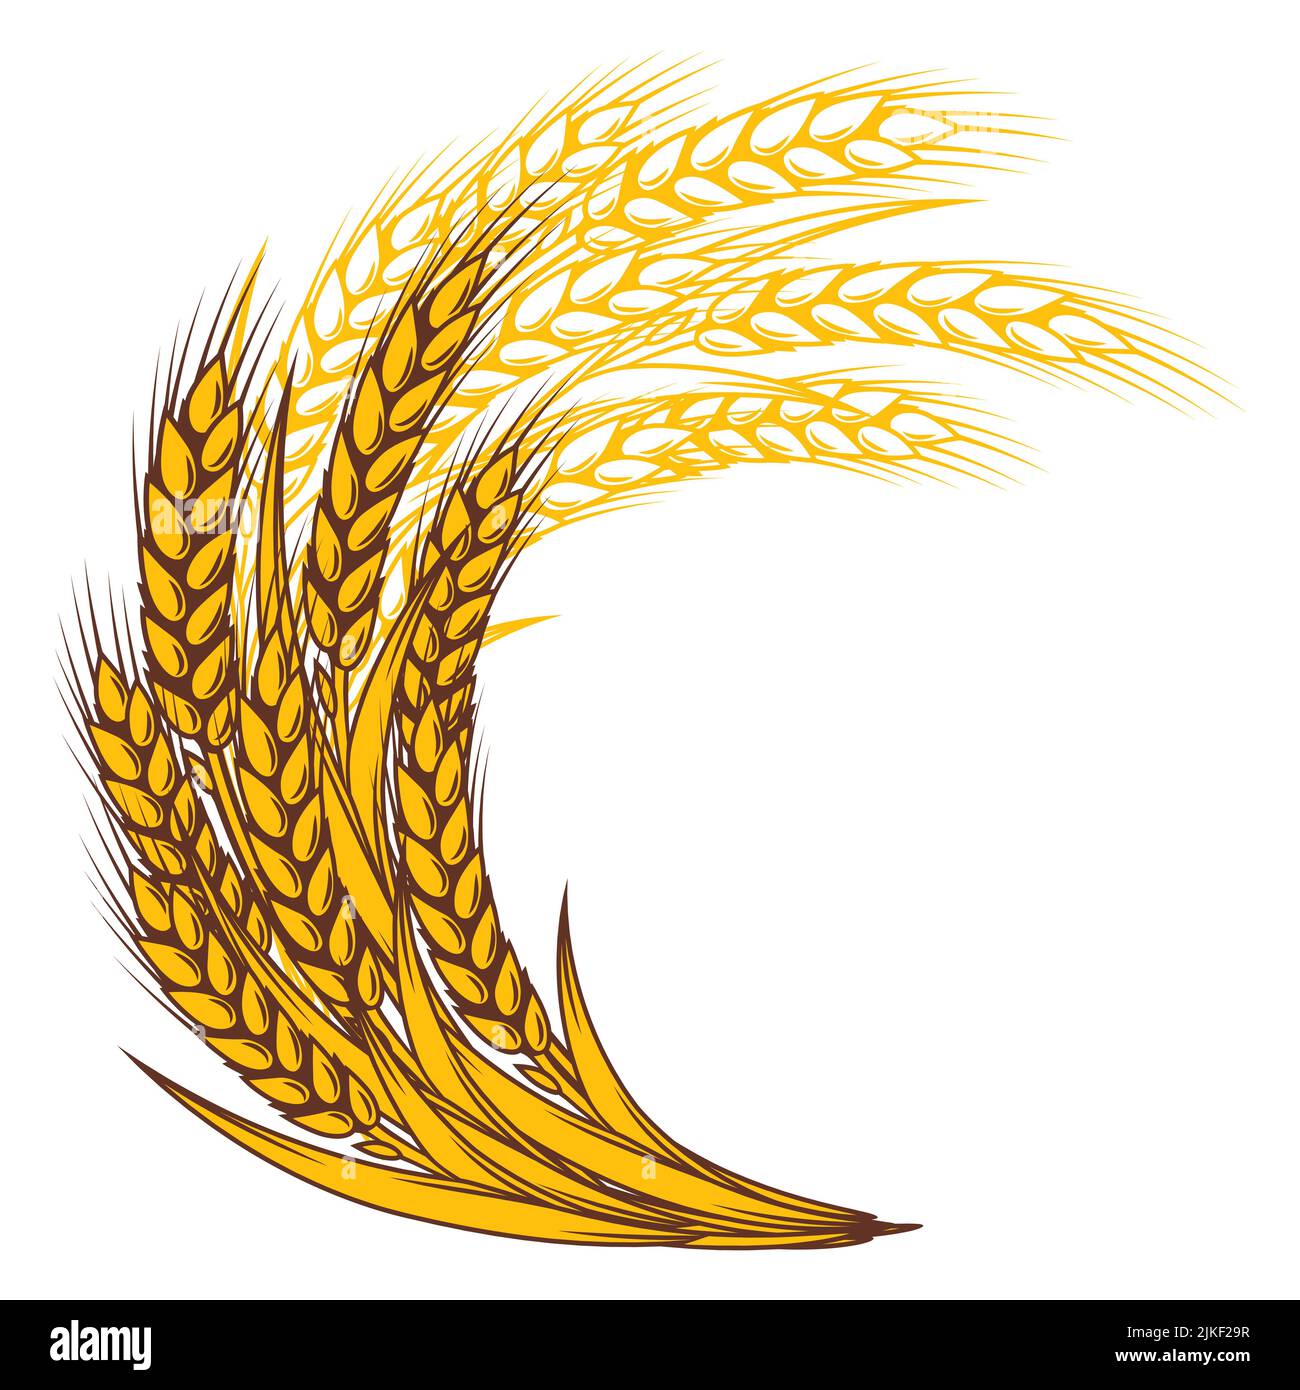 Bouquet de blé. Image agricole avec des oreilles dorées naturelles d'orge ou de seigle. Illustration de Vecteur